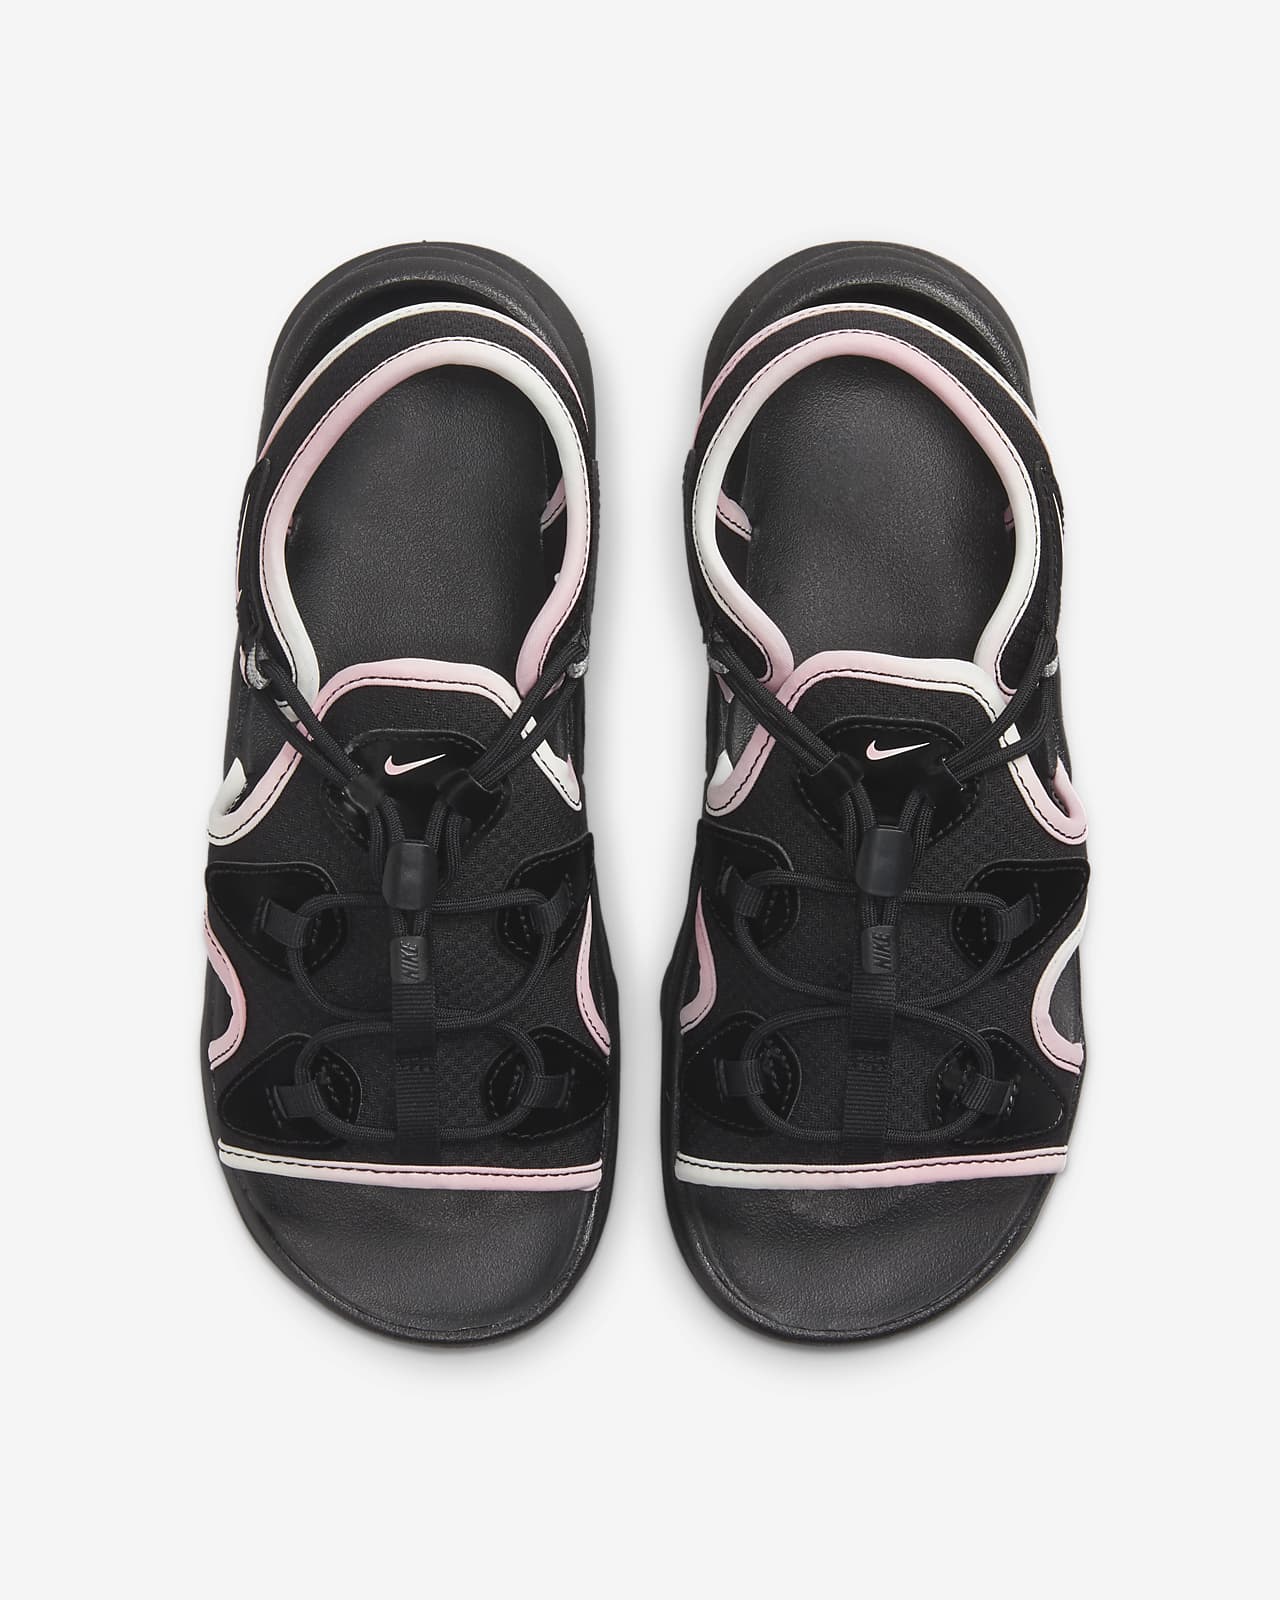 Nike Air Max Koko Women's Sandal